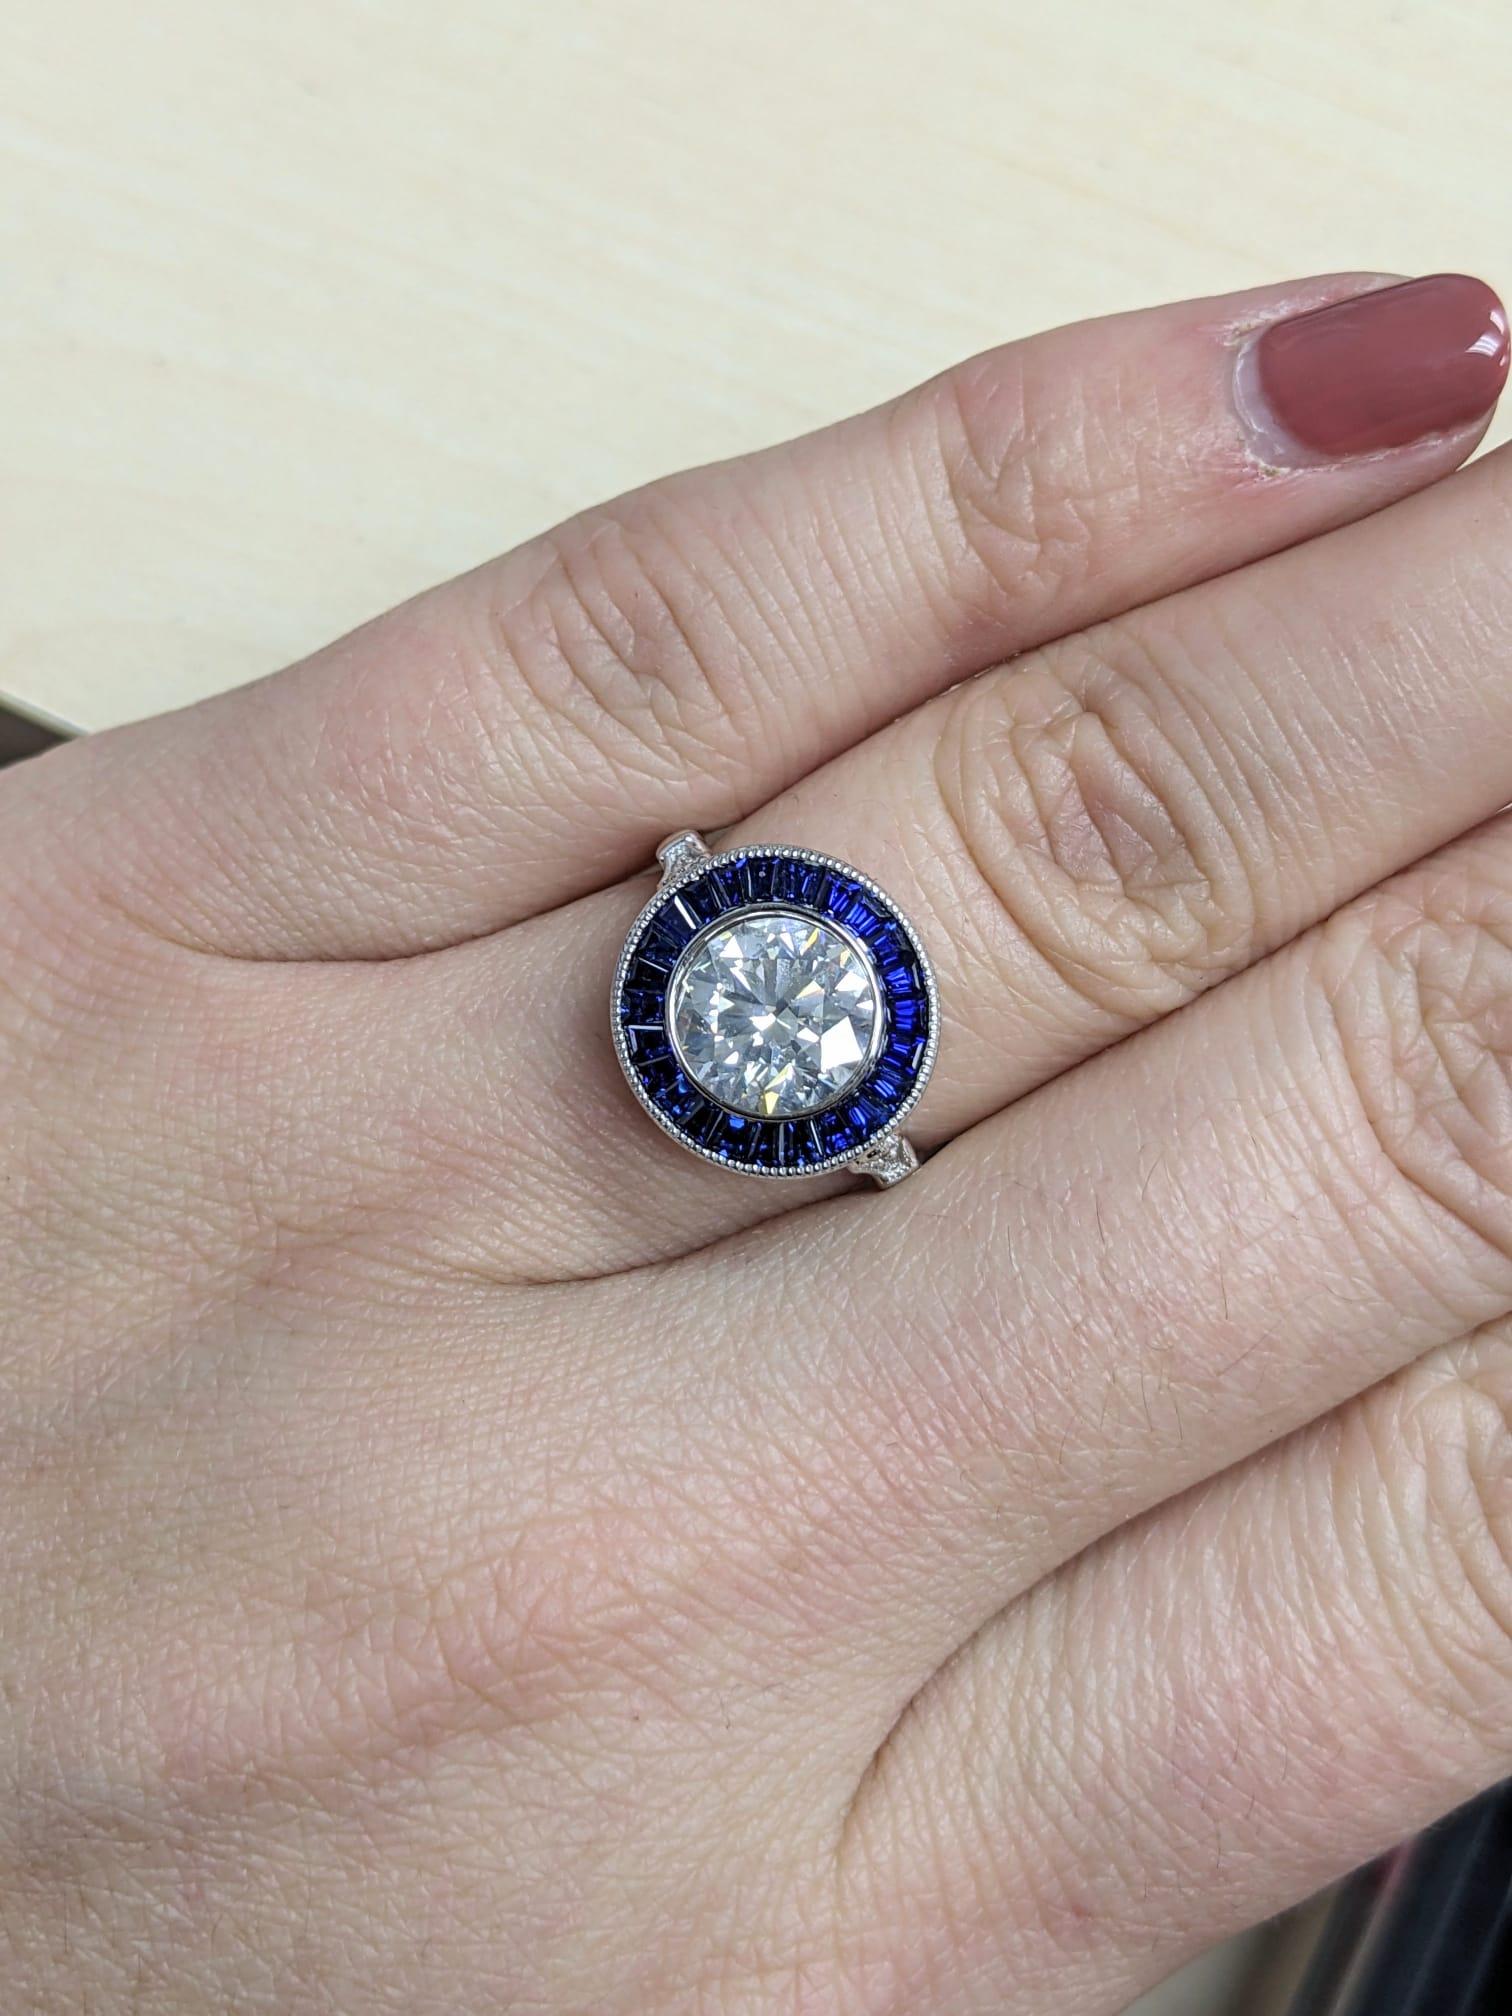 Cette bague de style Art déco est ornée d'un diamant vivant et substantiel de 2,20, entouré d'un anneau glamour de saphirs naturels d'un bleu royal. Certifié par le GIA avec des notes excellentes dans toutes les catégories de finition, le diamant